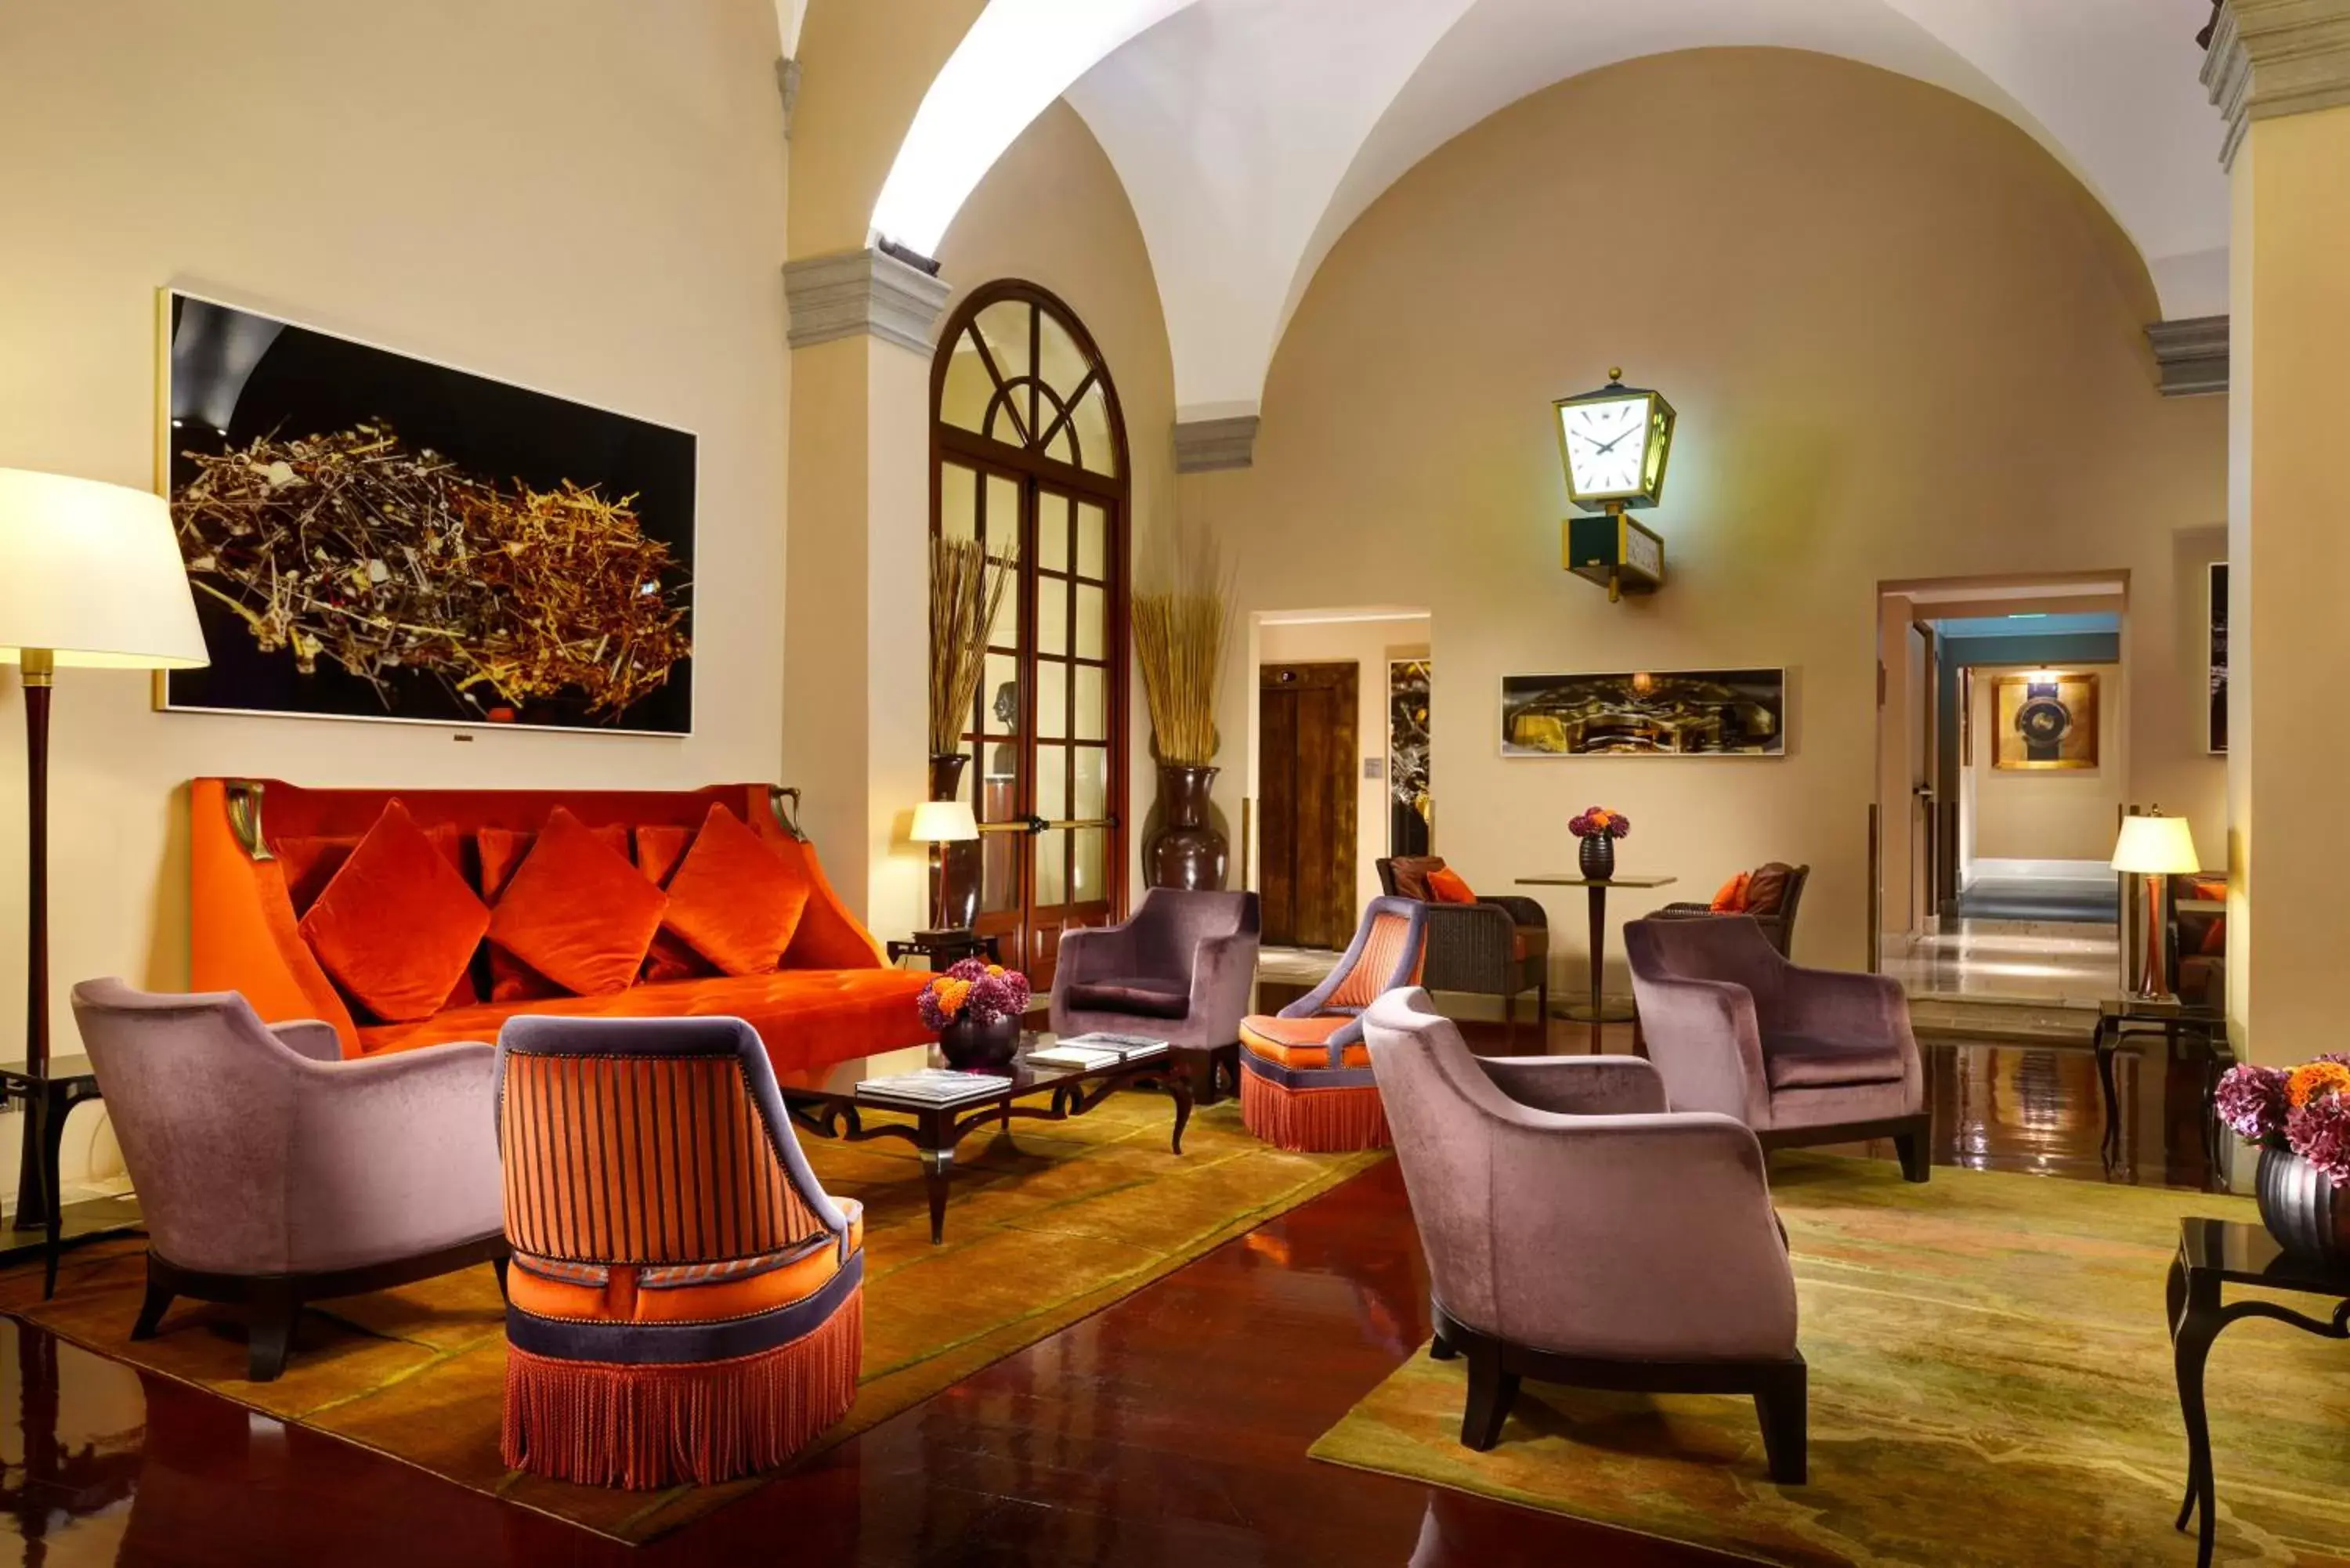 Lobby or reception in Hotel L'Orologio - WTB Hotels